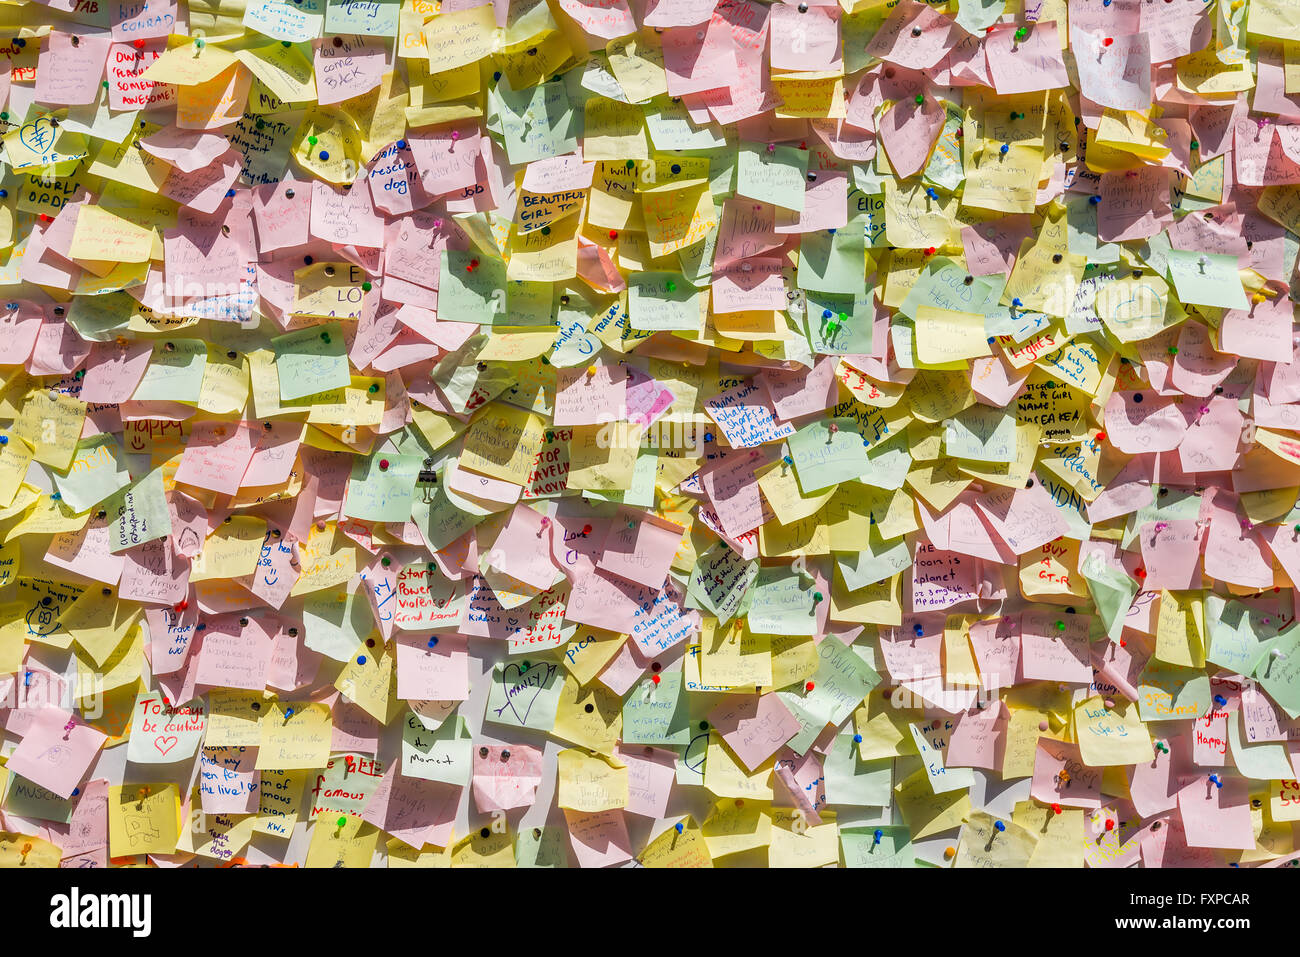 Menschen post Memo, Bekanntmachung, Anfragen und Wünsche. Hunderte von Post-It sind am schwarzen Brett am Manly Beach, Sydney angeheftet. Stockfoto